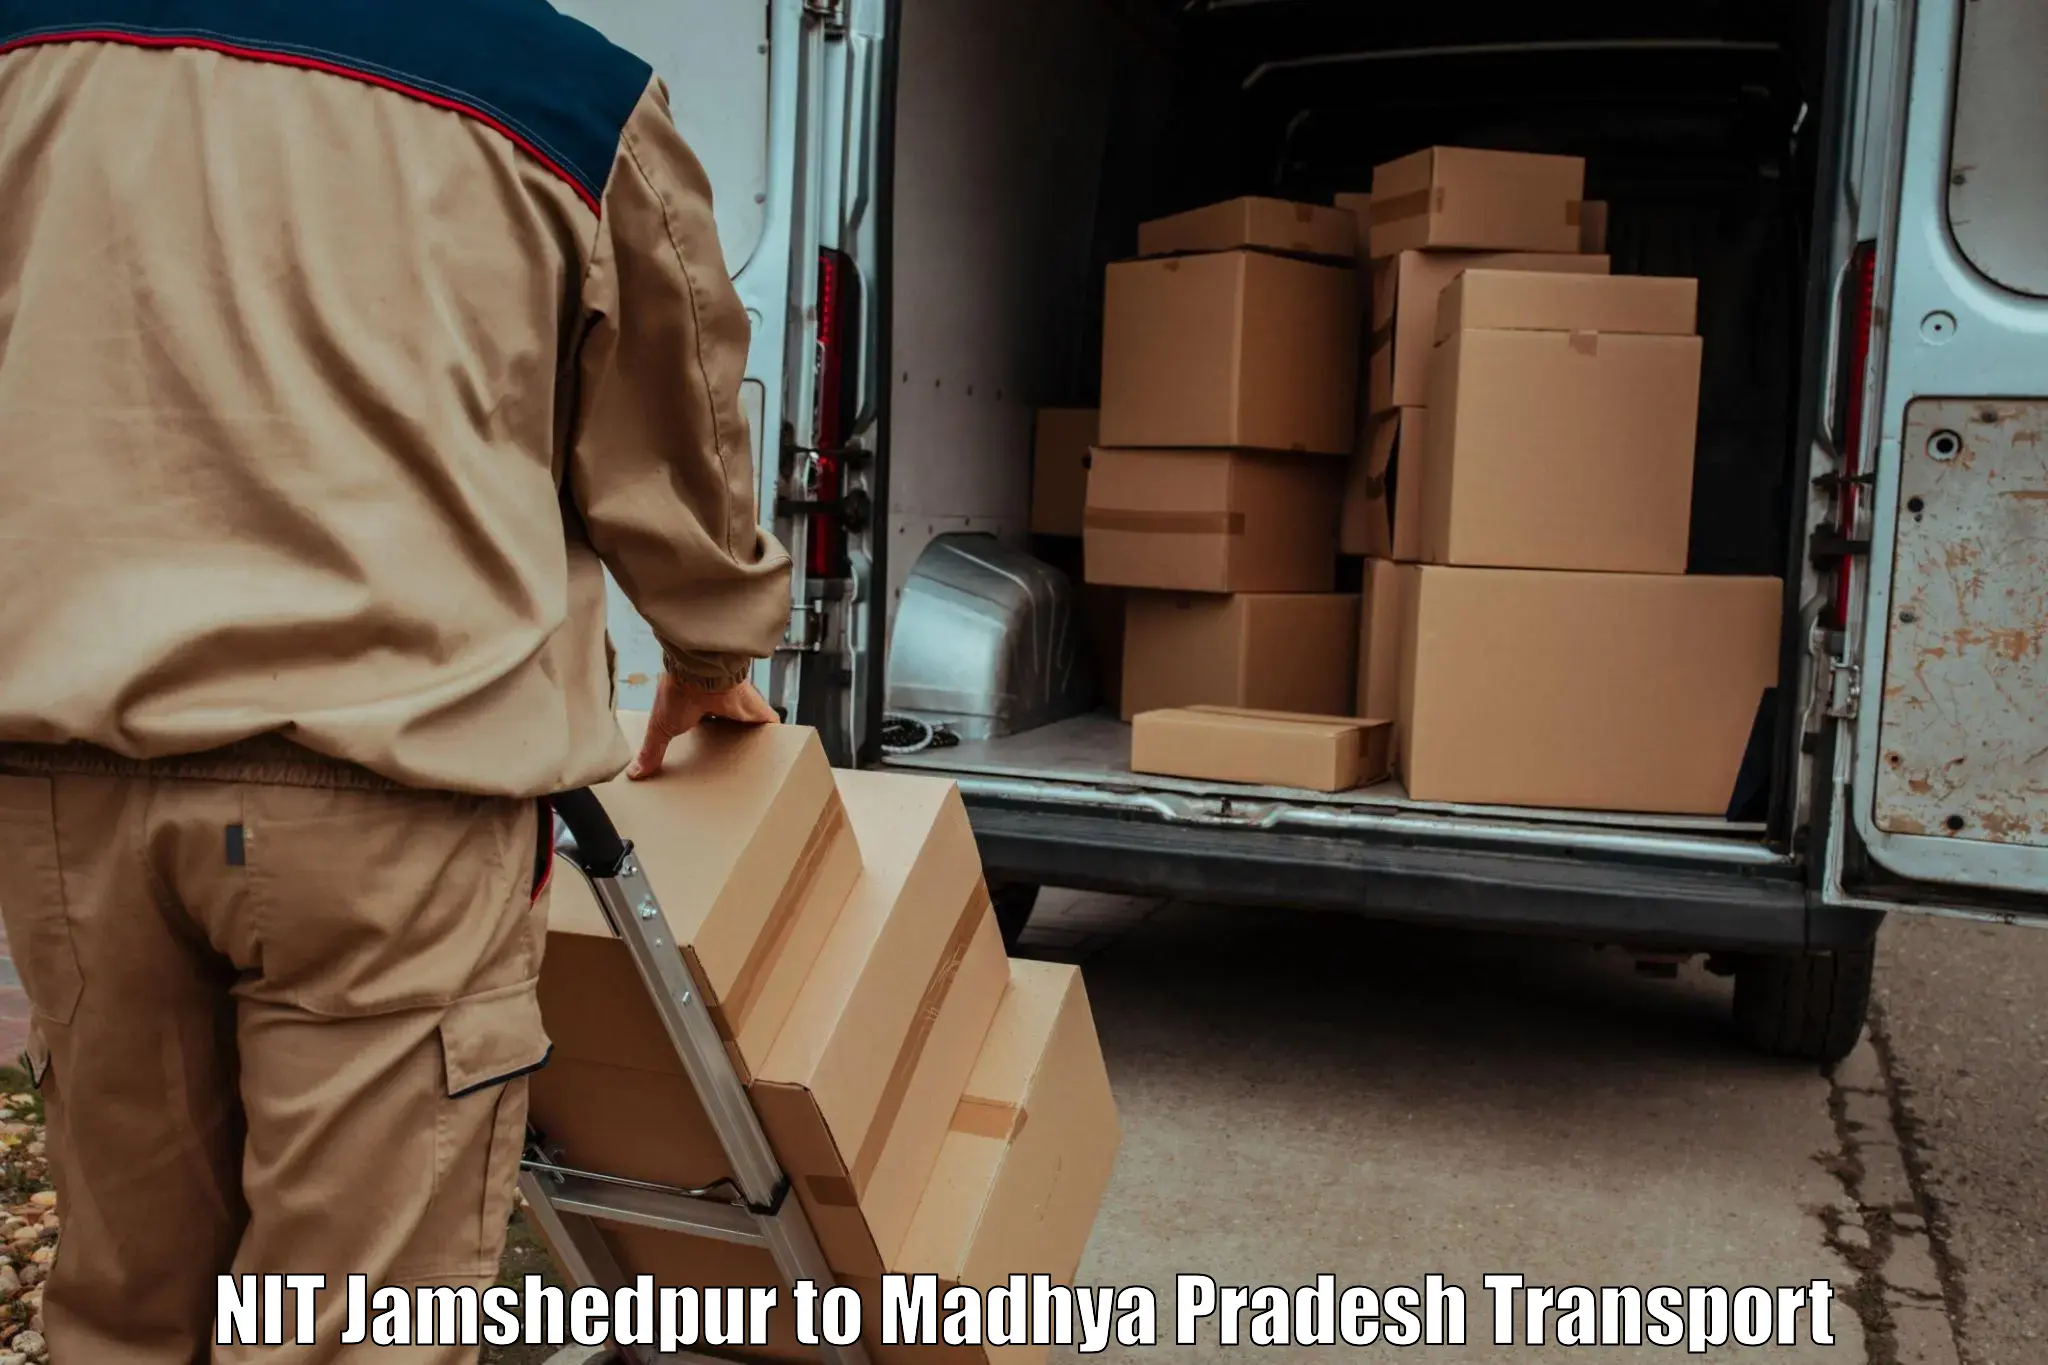 Lorry transport service NIT Jamshedpur to Majhgawa